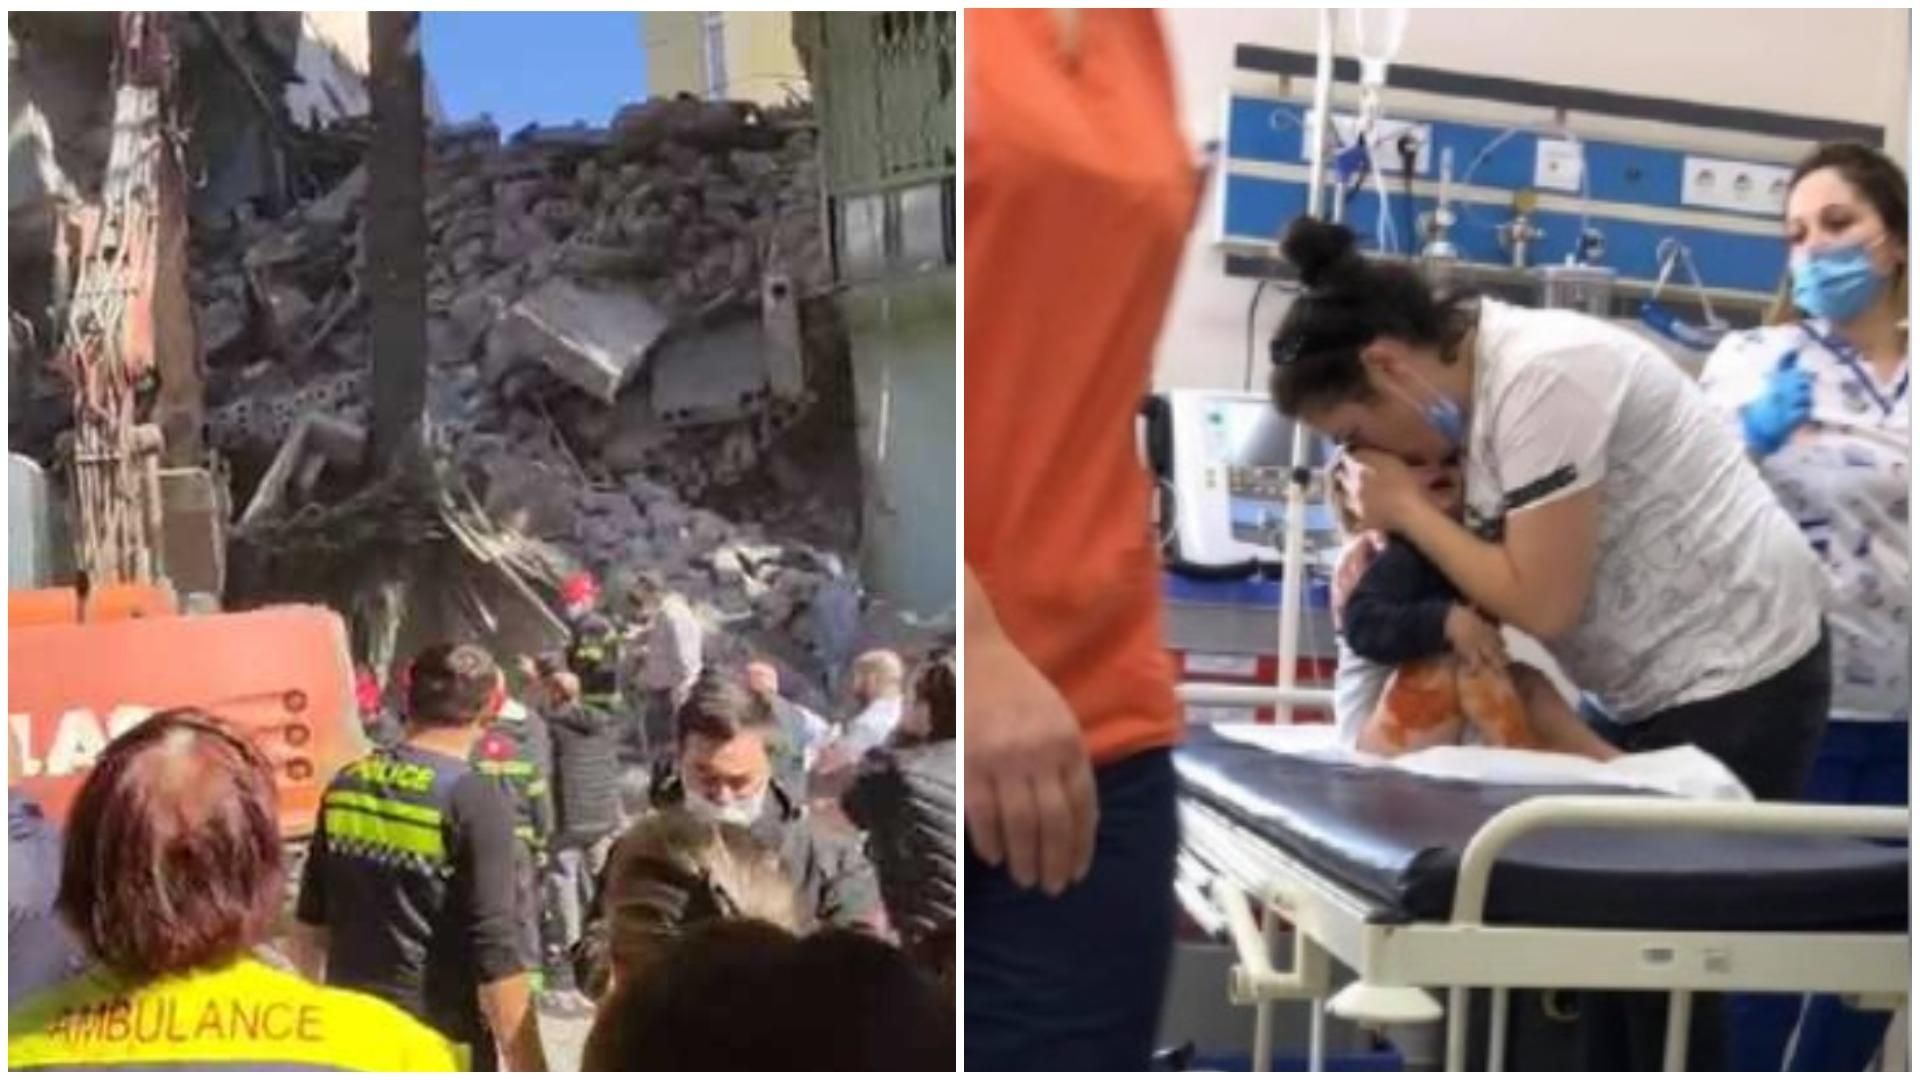 "Я застряг під великим бетоном": люди з-під завалів у Батумі просять допомоги, врятували дитину - Грузія новини - 24 Канал